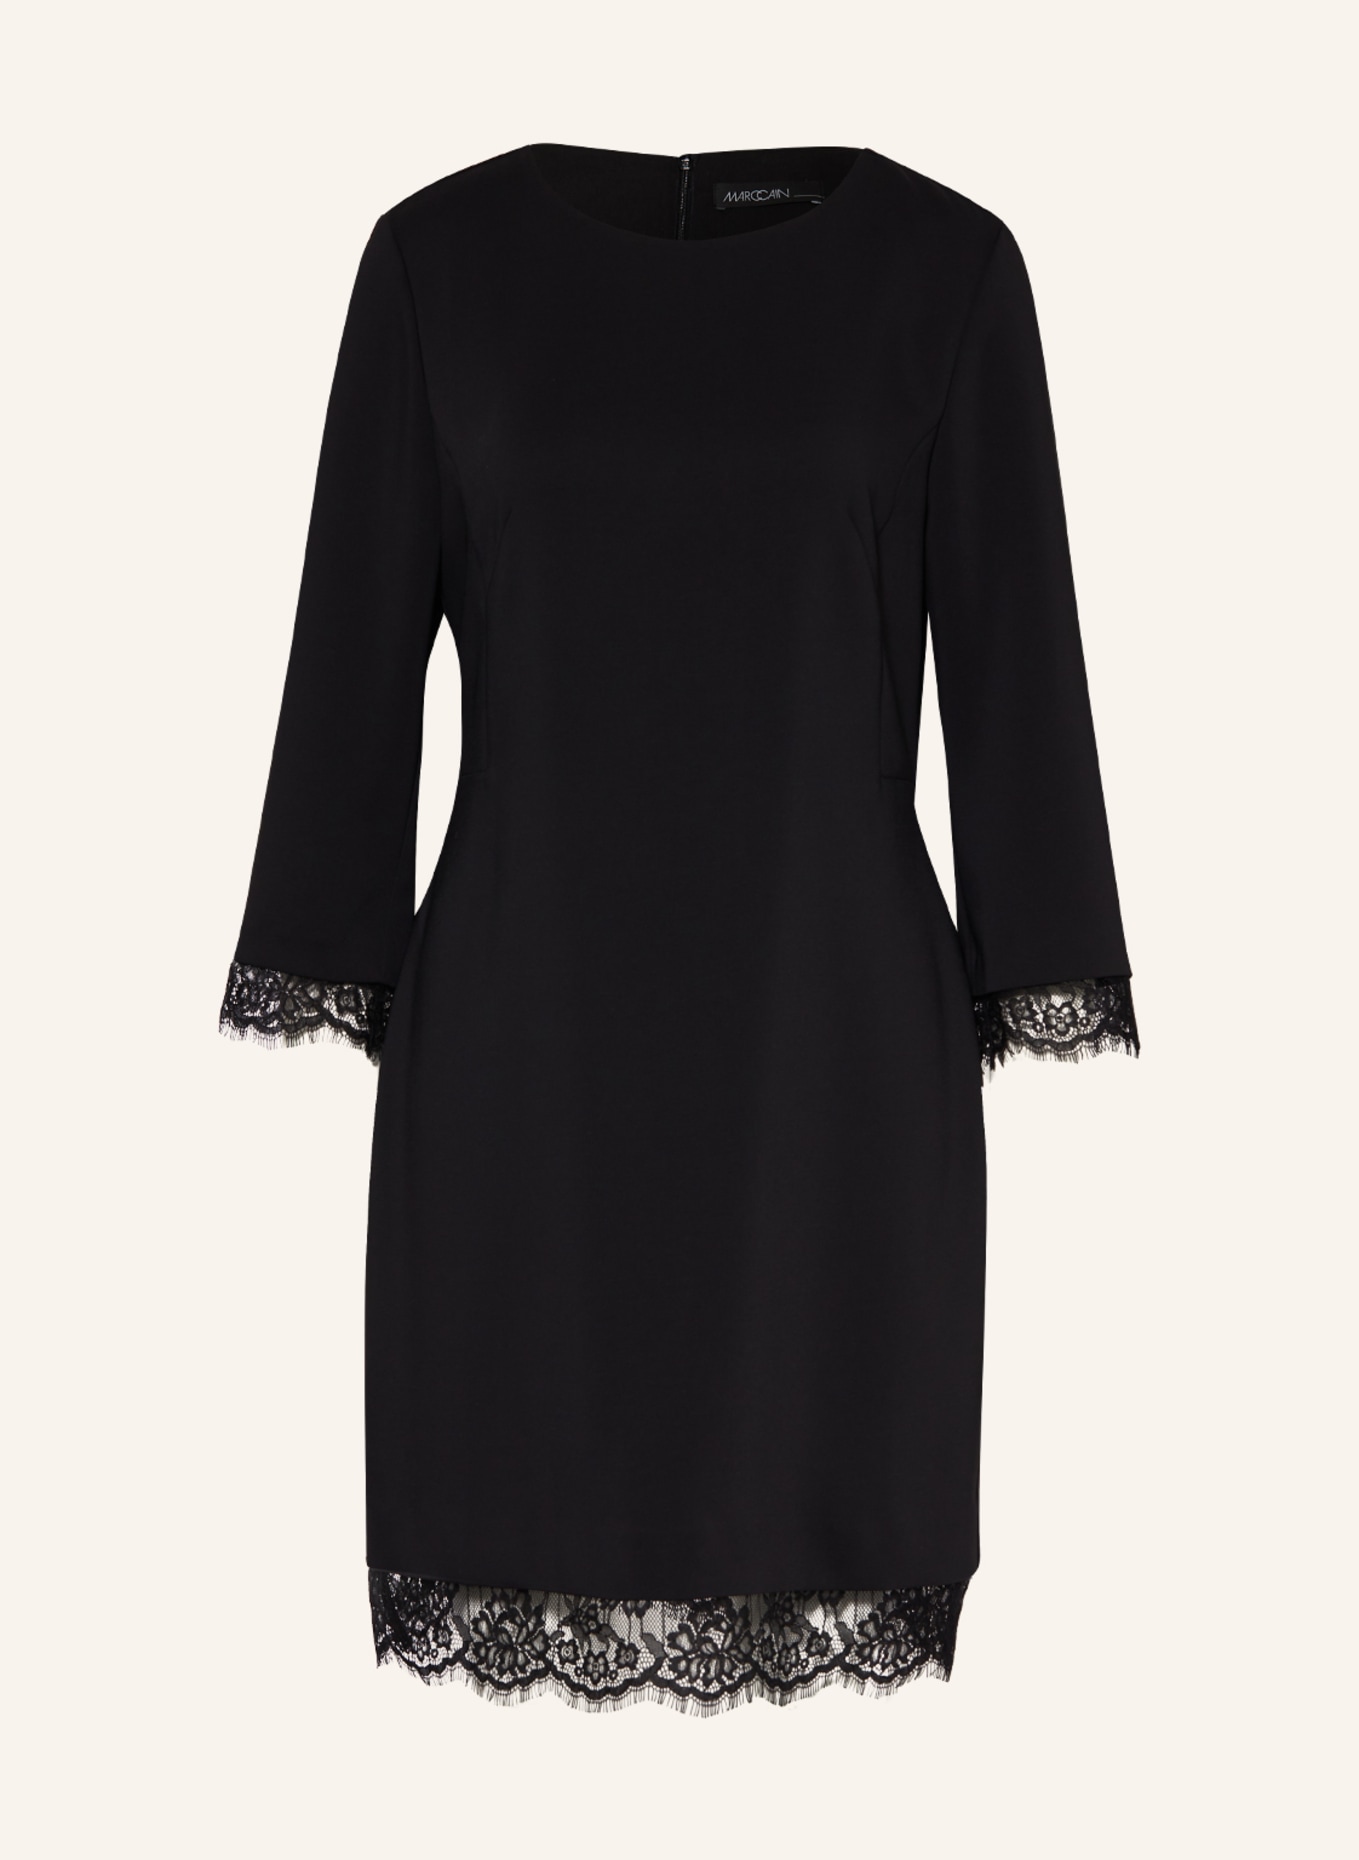 MARC CAIN Kleid mit Spitze, Farbe: 900 BLACK (Bild 1)